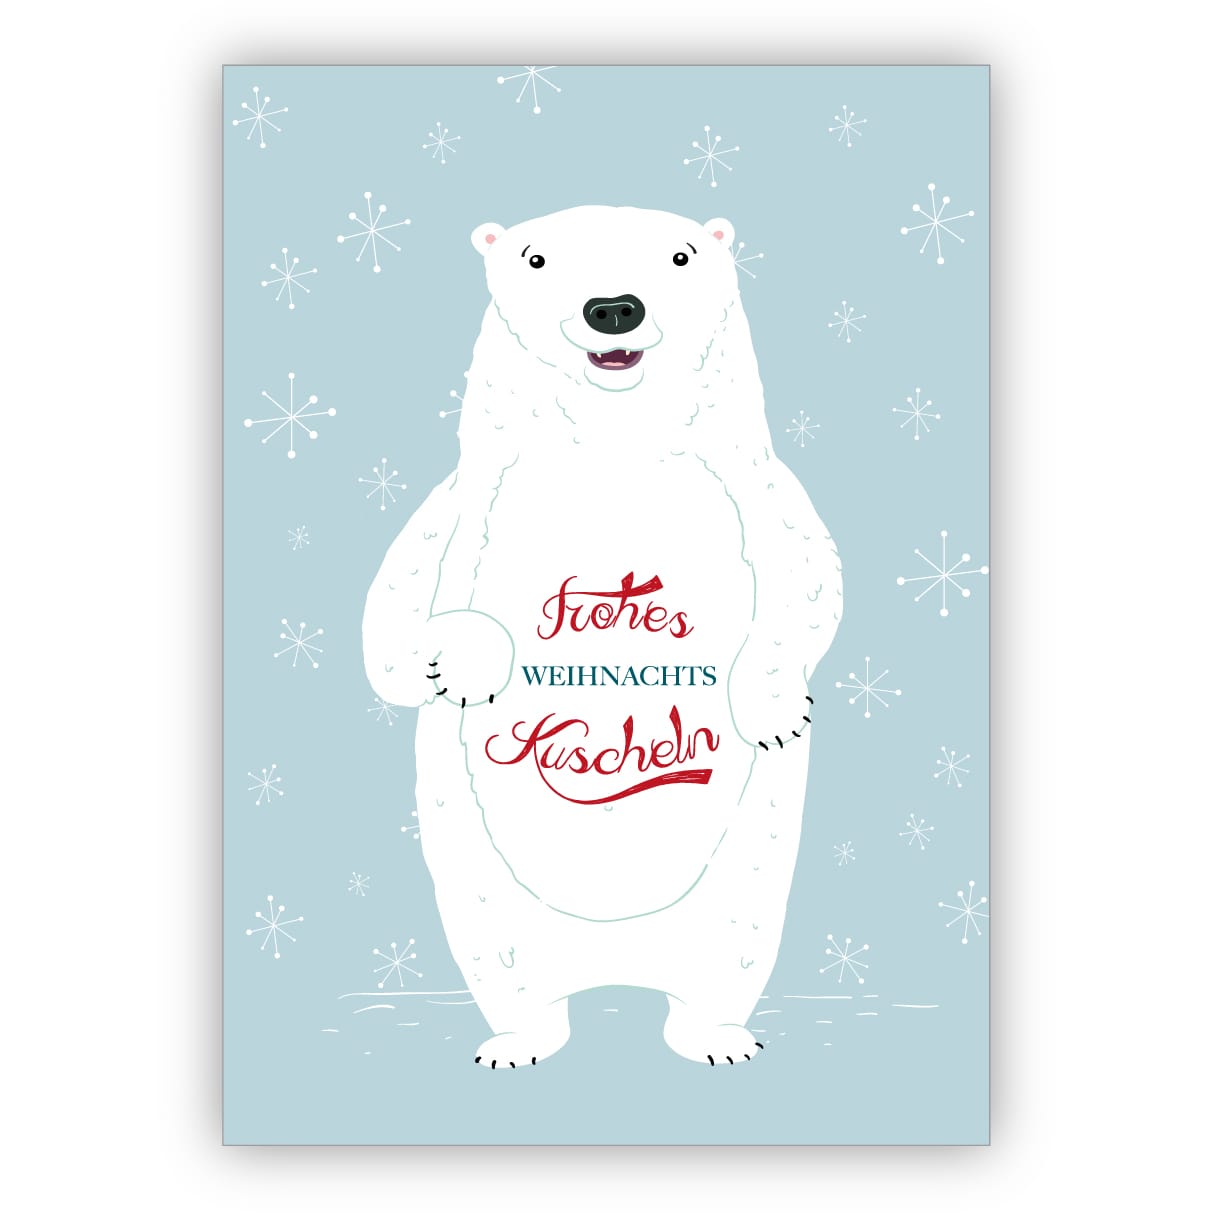 Susse Eisbaren Weihnachtskarte Mit Nettem Weihnachtsgruss Frohes Weihnachtskuscheln Kartenkaufrausch De